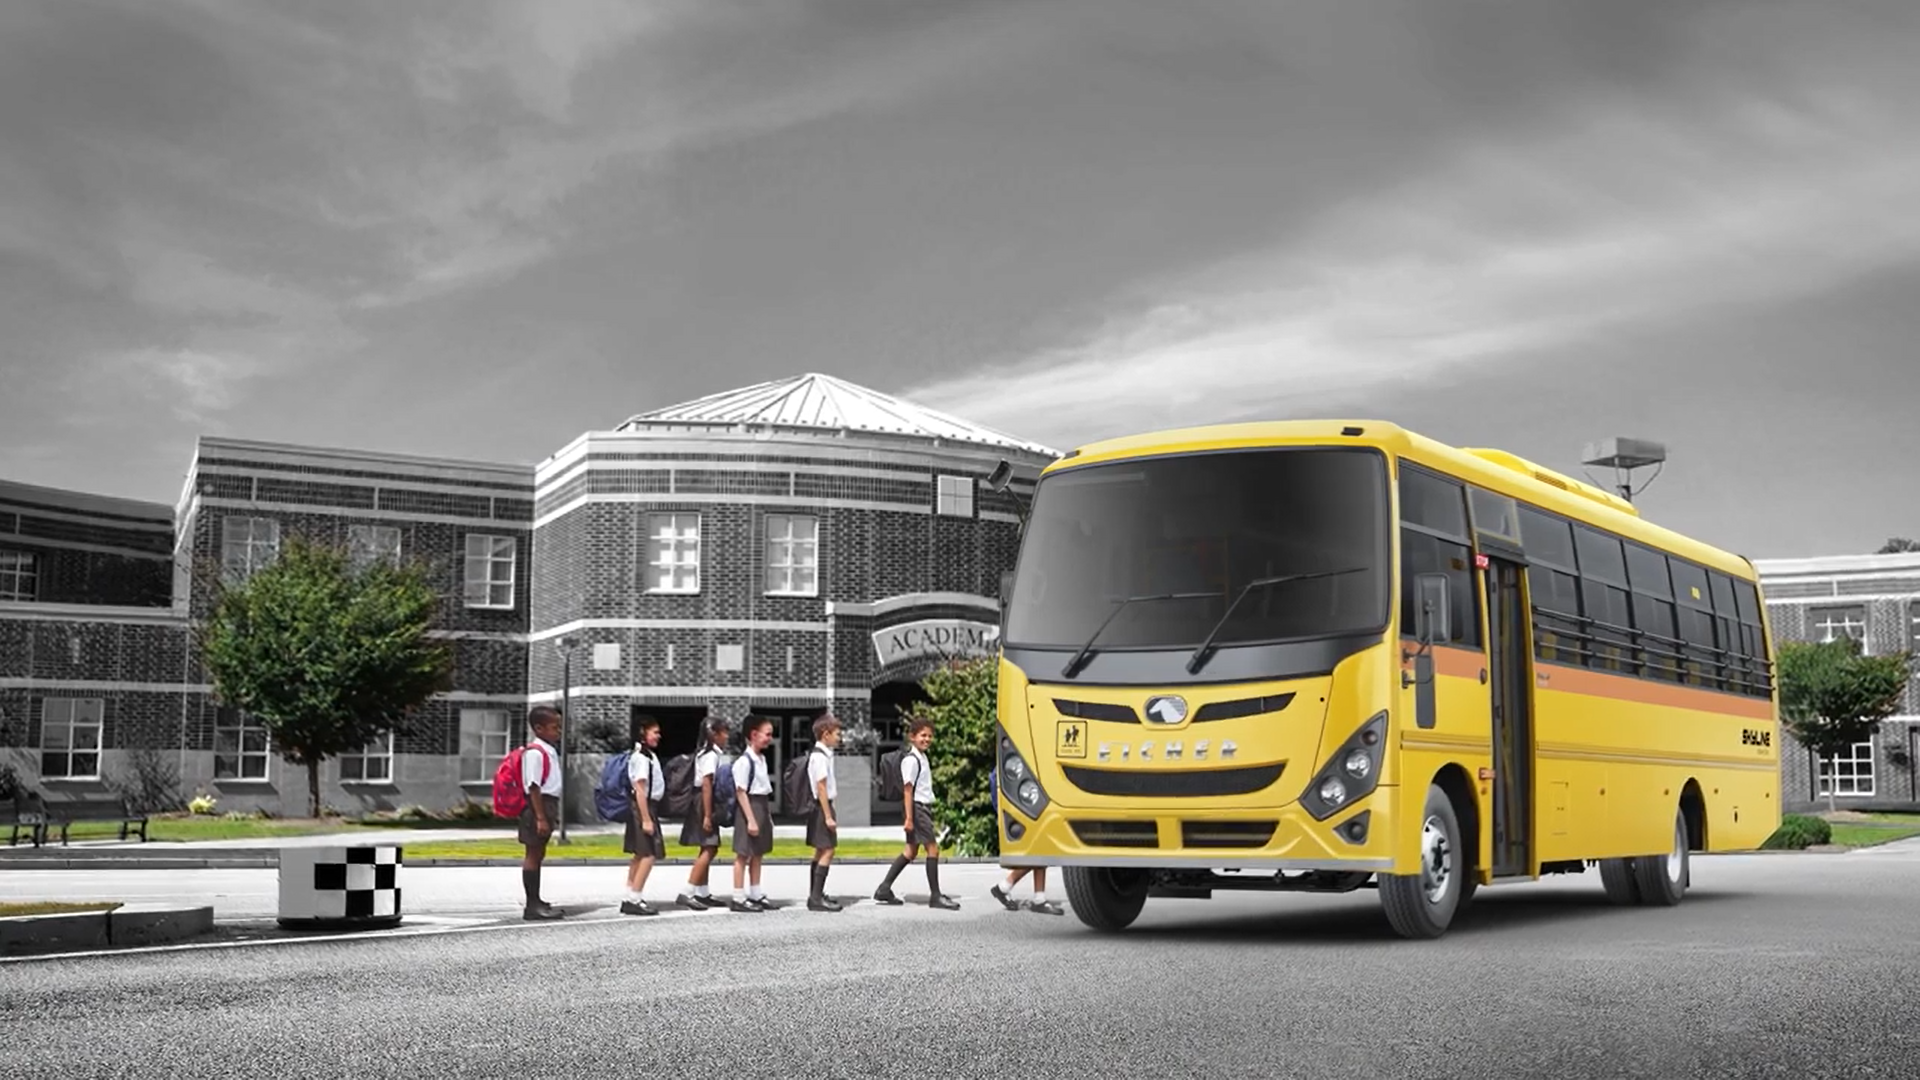 Know your Eicher BSVI Vehicle – Eicher School Bus Range (Hindi)